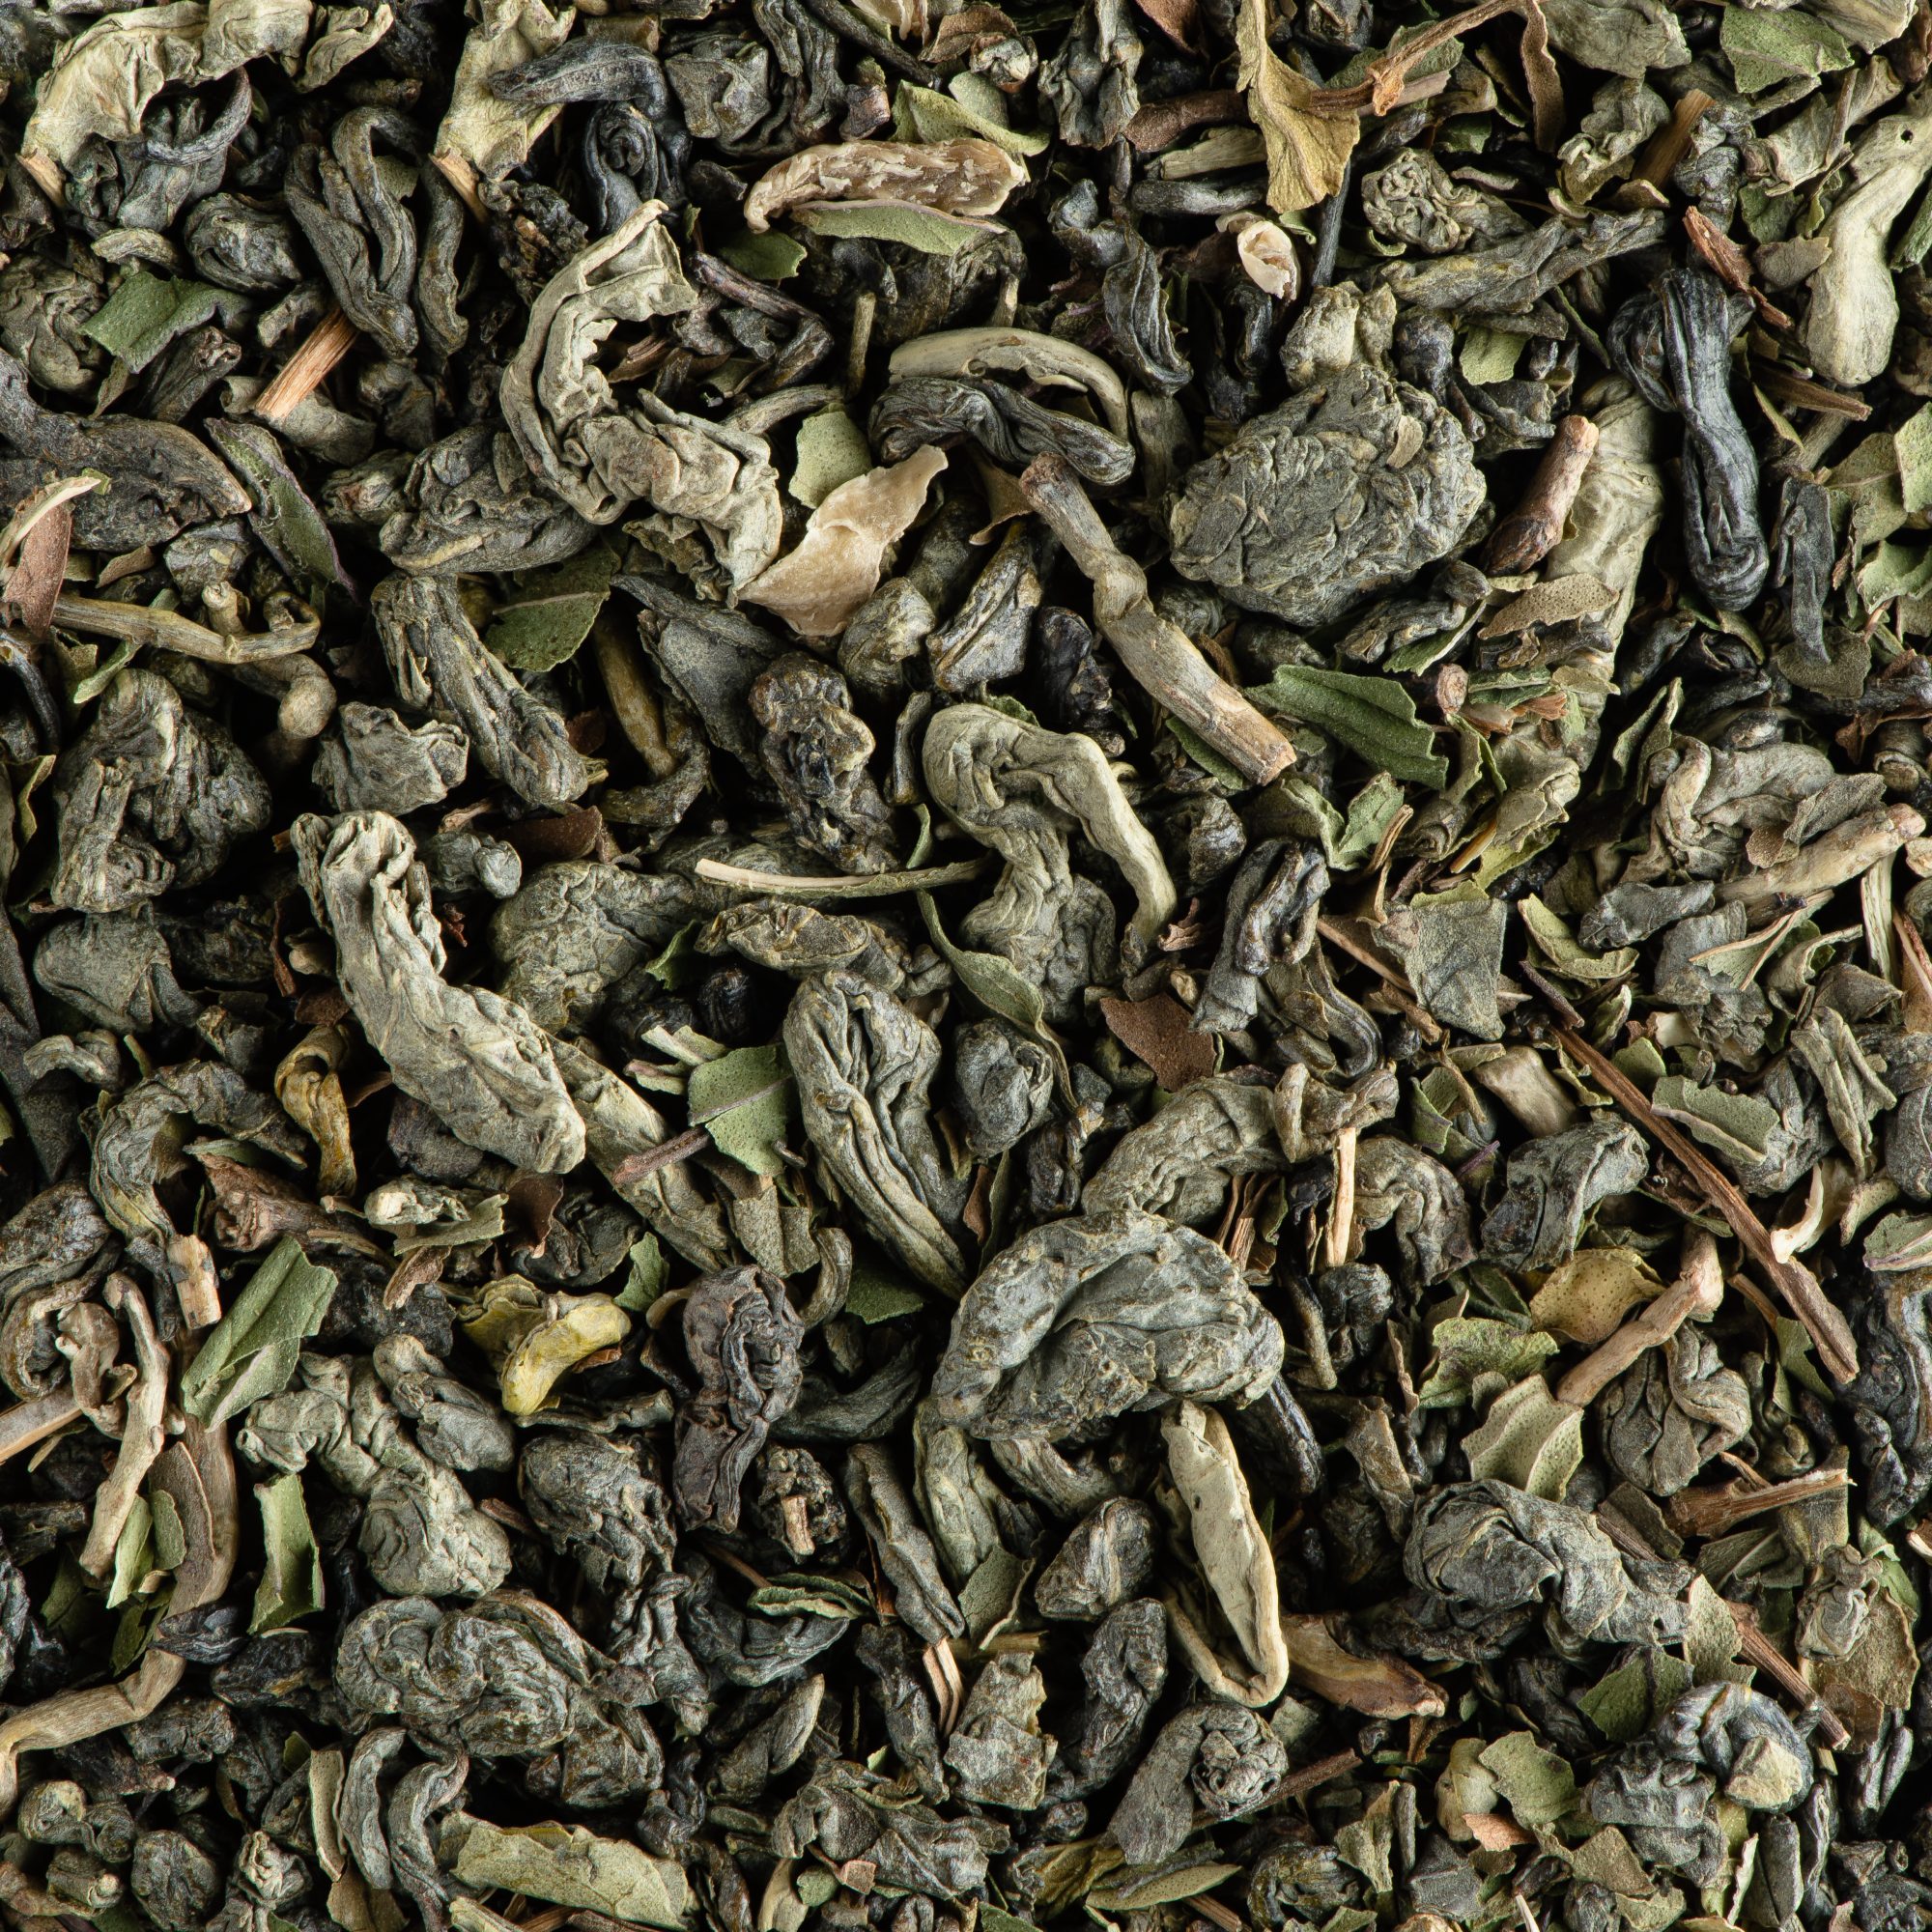 Dammann Tea Vert Menthe 24 Cristal® tea bags, Green Tea, 18-20-0207